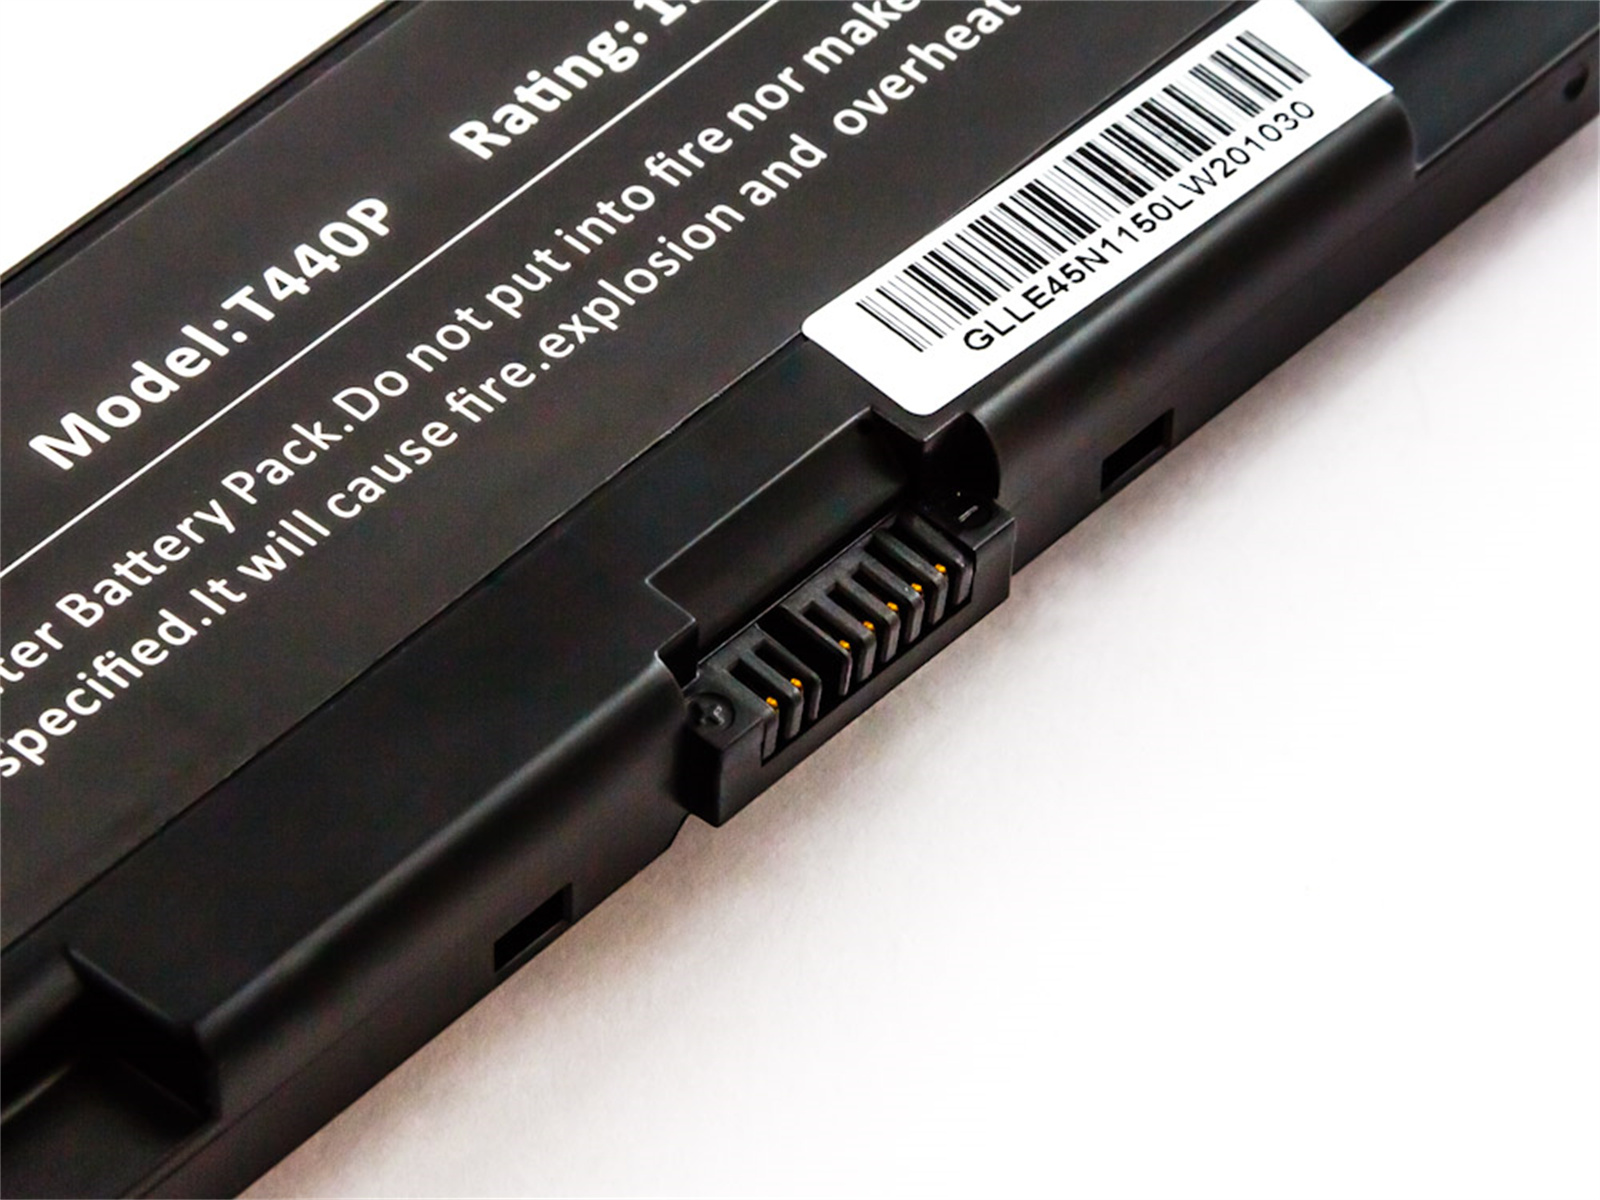 AGI Akku kompatibel mit ThinkPad Li-Ion, Volt, 11.1 L540 Notebookakku, Lenovo mAh 4400 Li-Ion